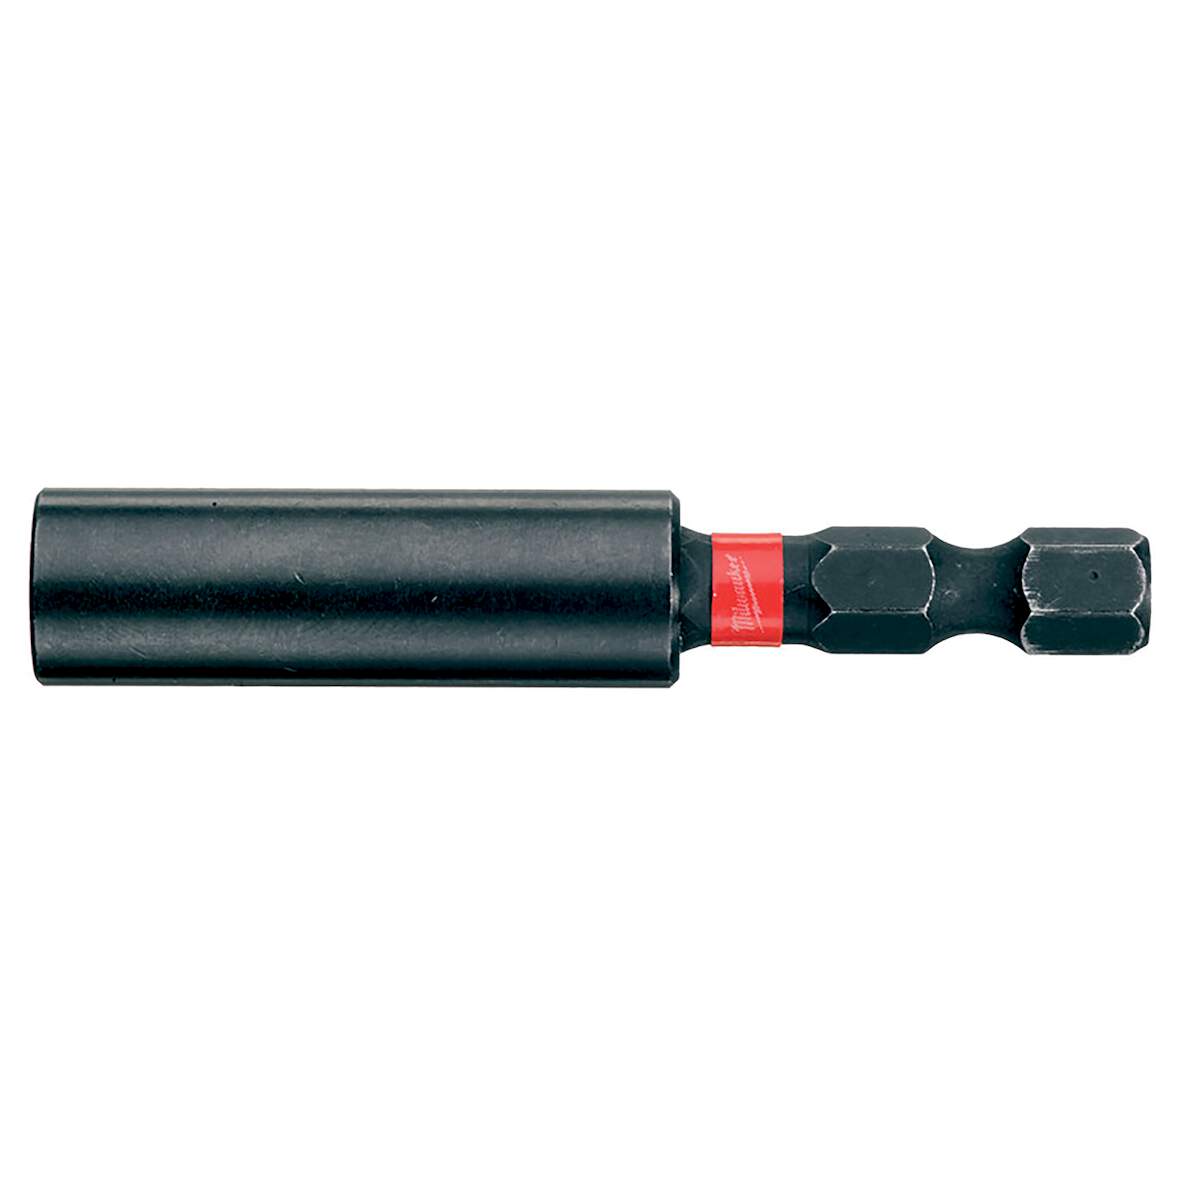 1261905 - SHOCKWAVE Magnetbithalter 1/4" Hex, 60 mm